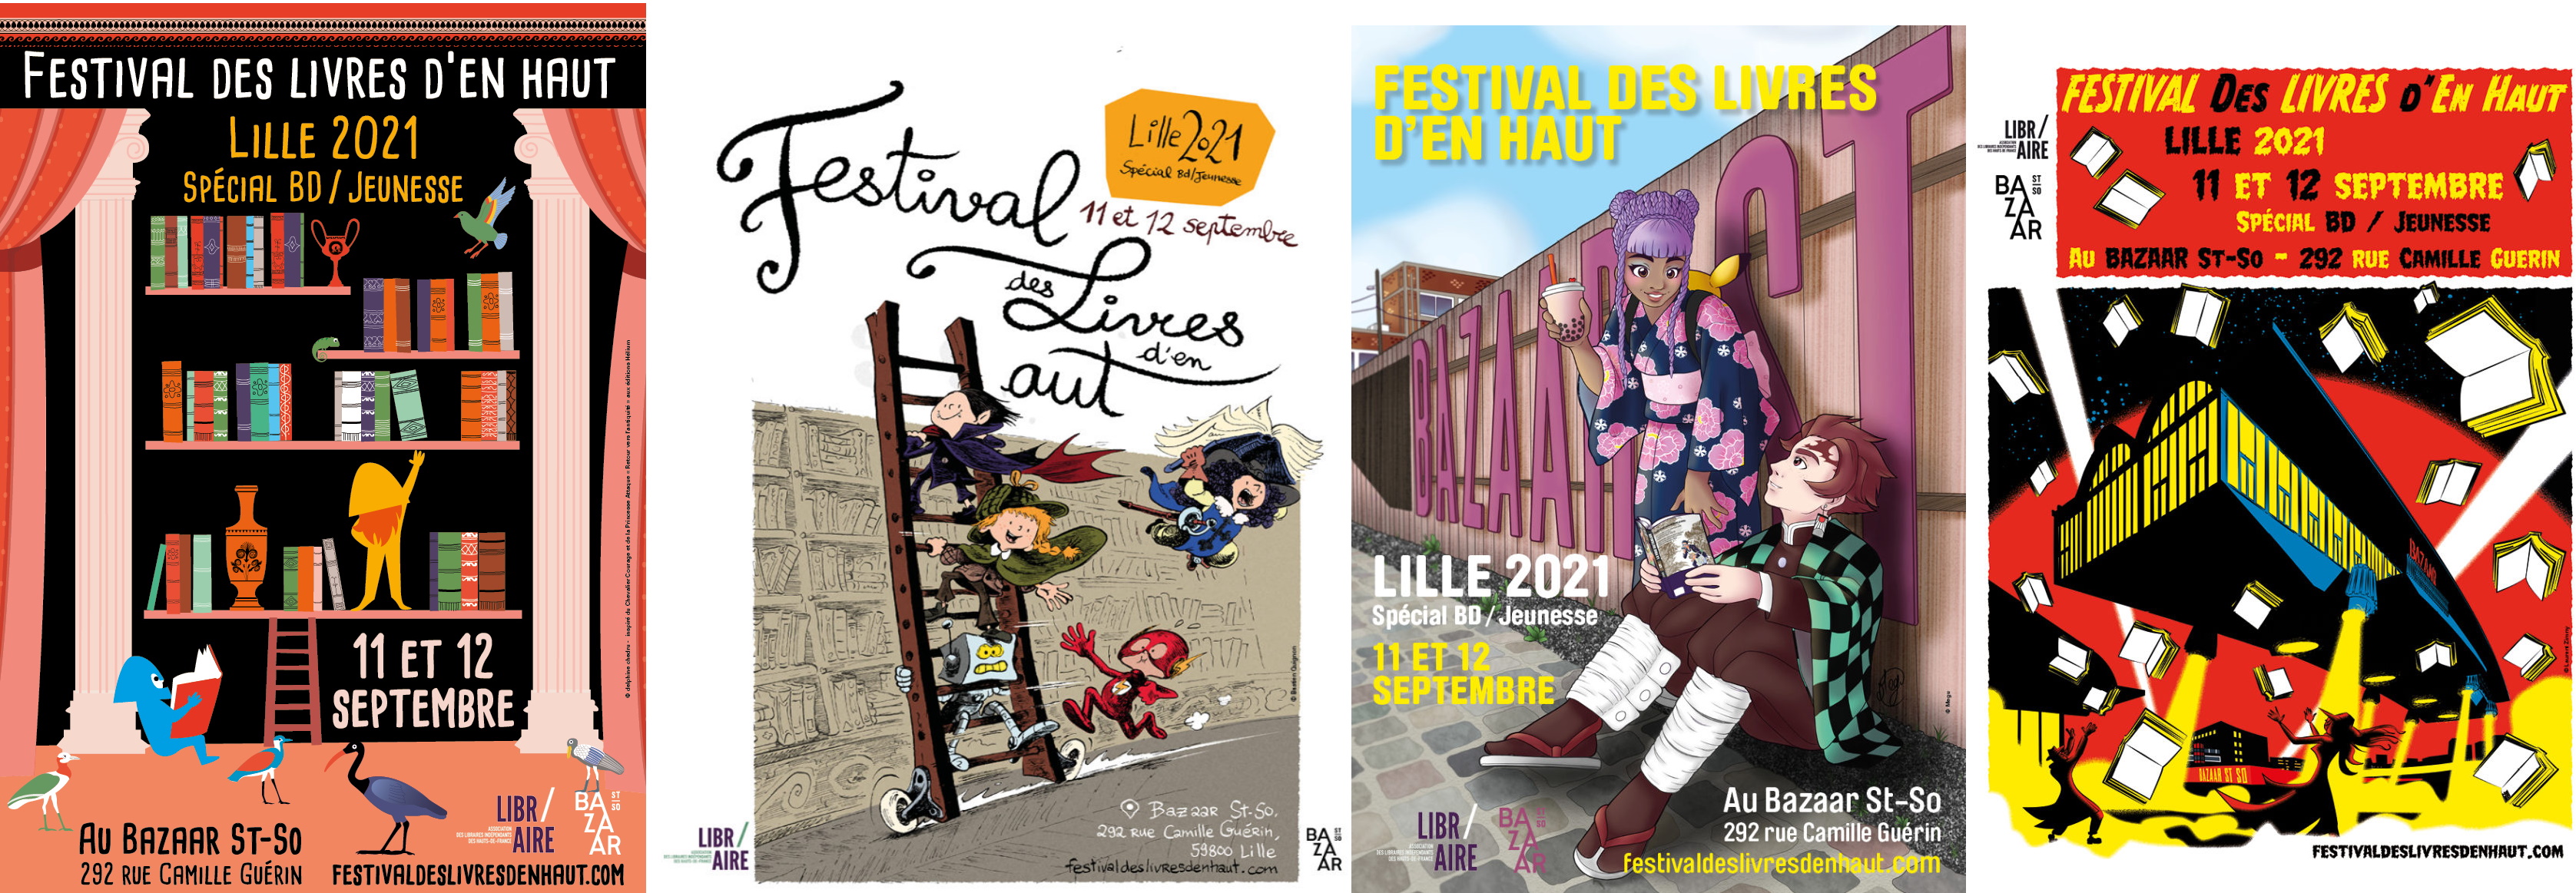 Festival des livres d’en haut Lille 2021